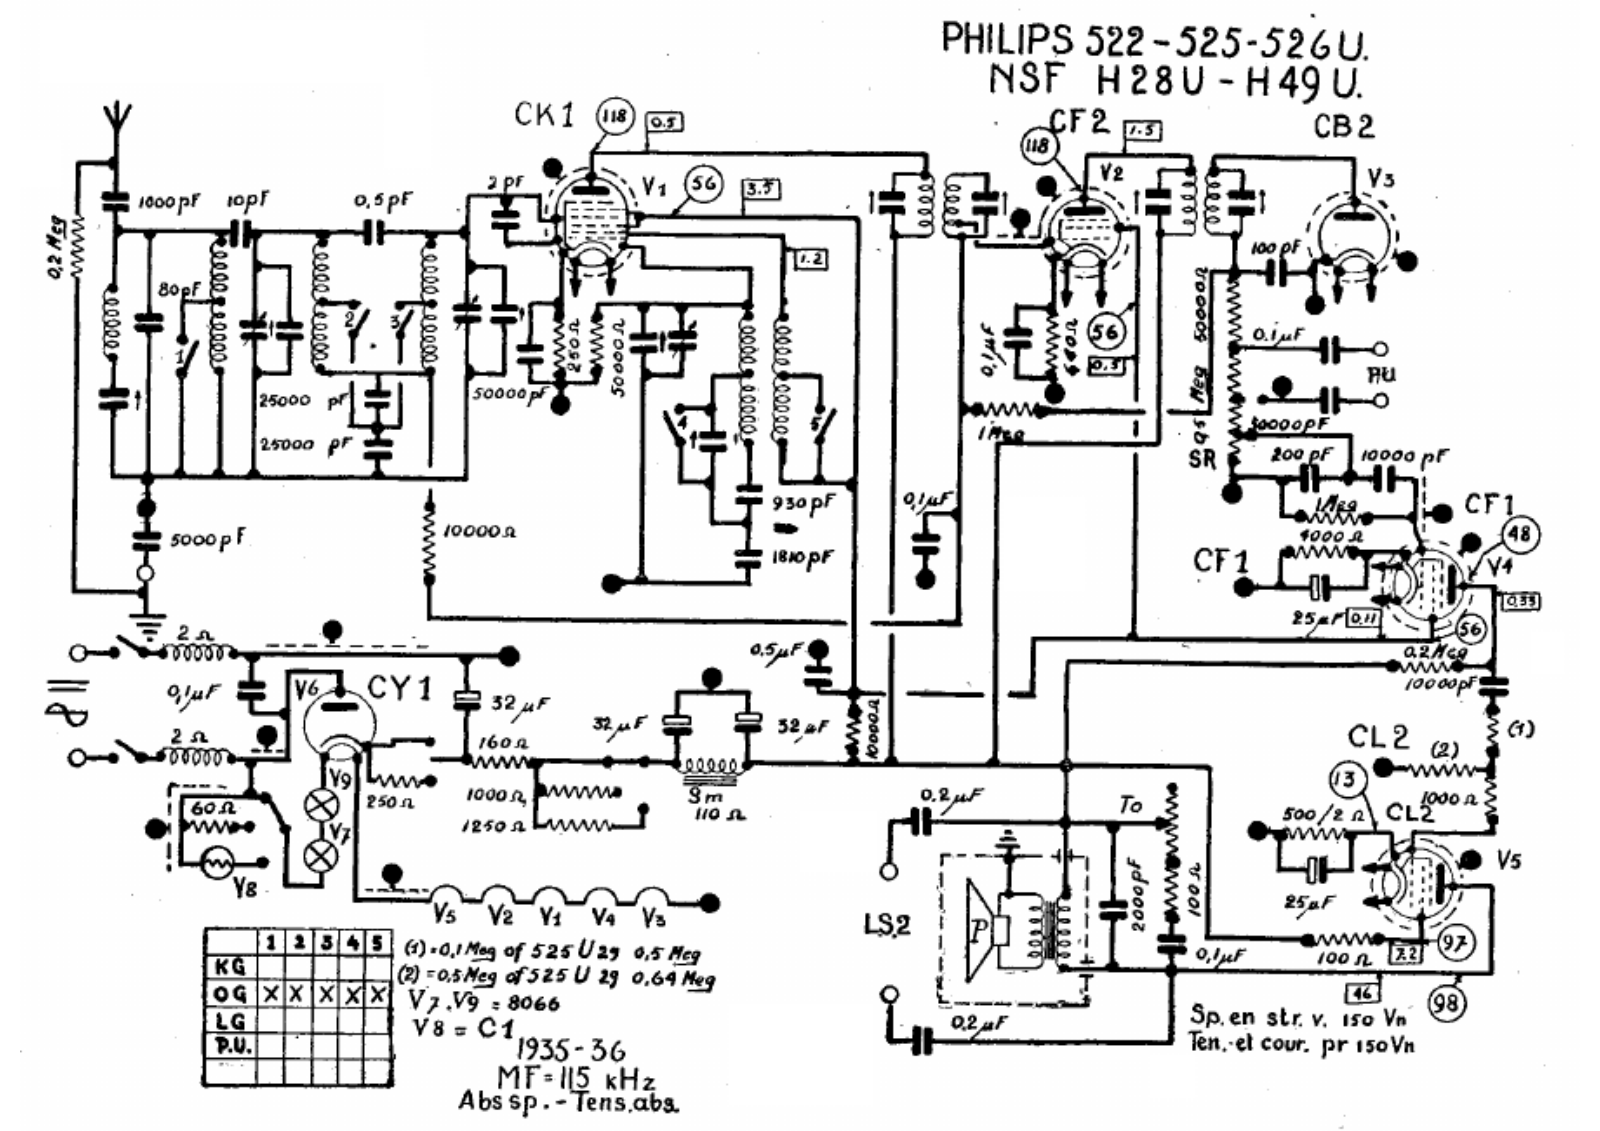 Philips 522, 525, 526u schematic